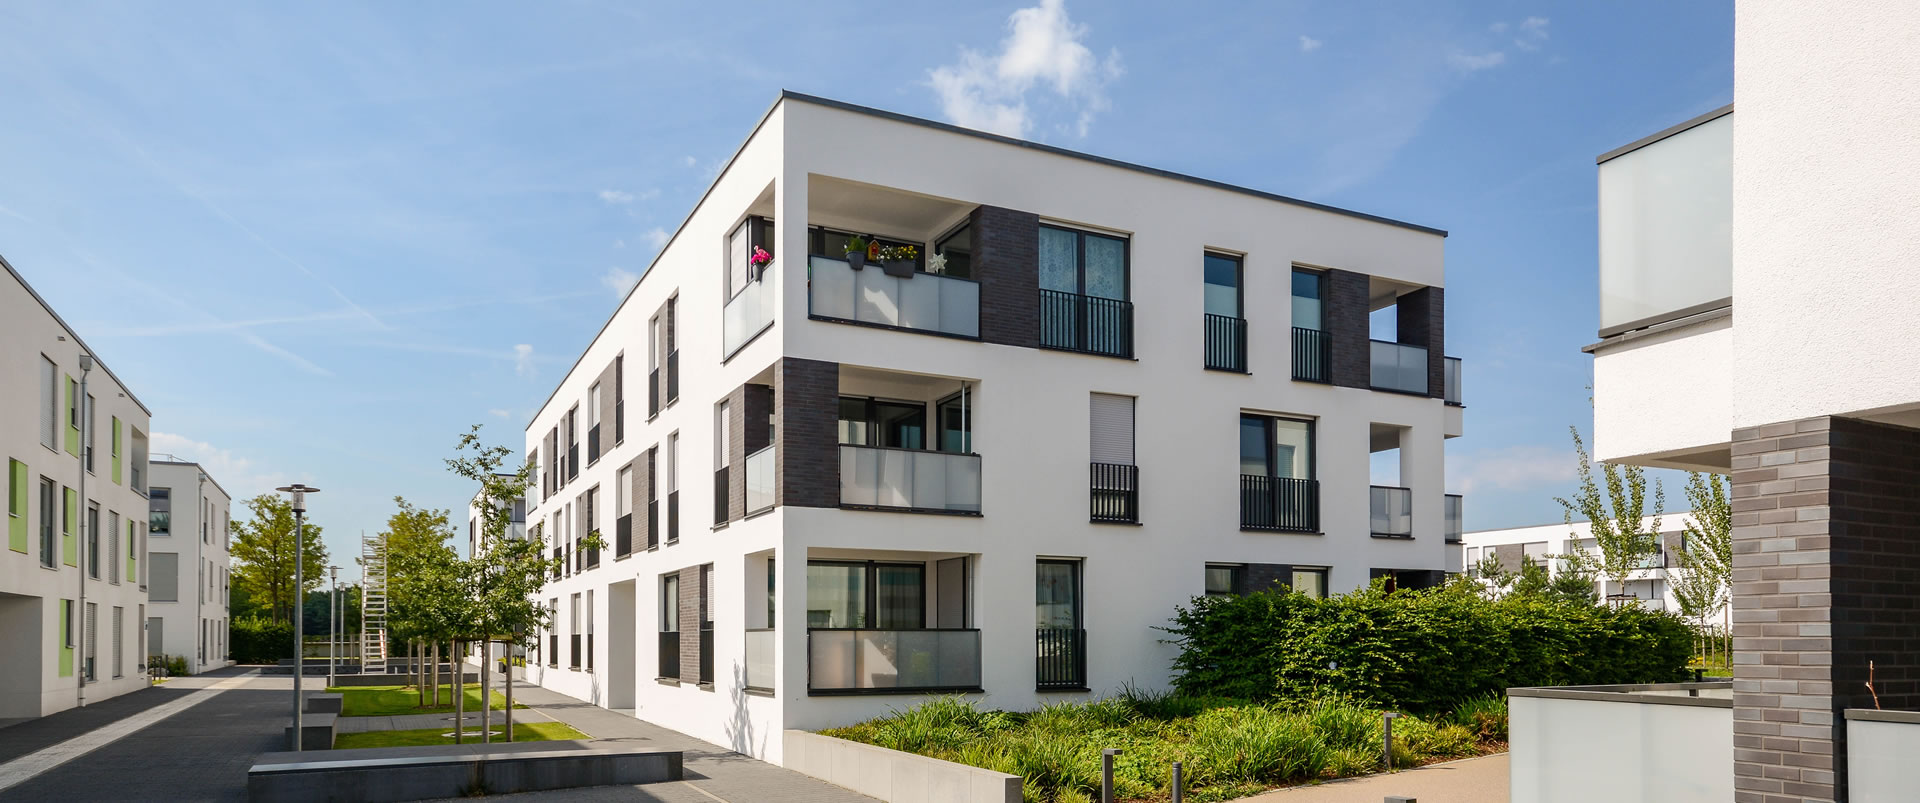 Haus verkaufen mit Immobilienmakler im Raum Neu Ulm Augsburg Memmingen und Stuttgart